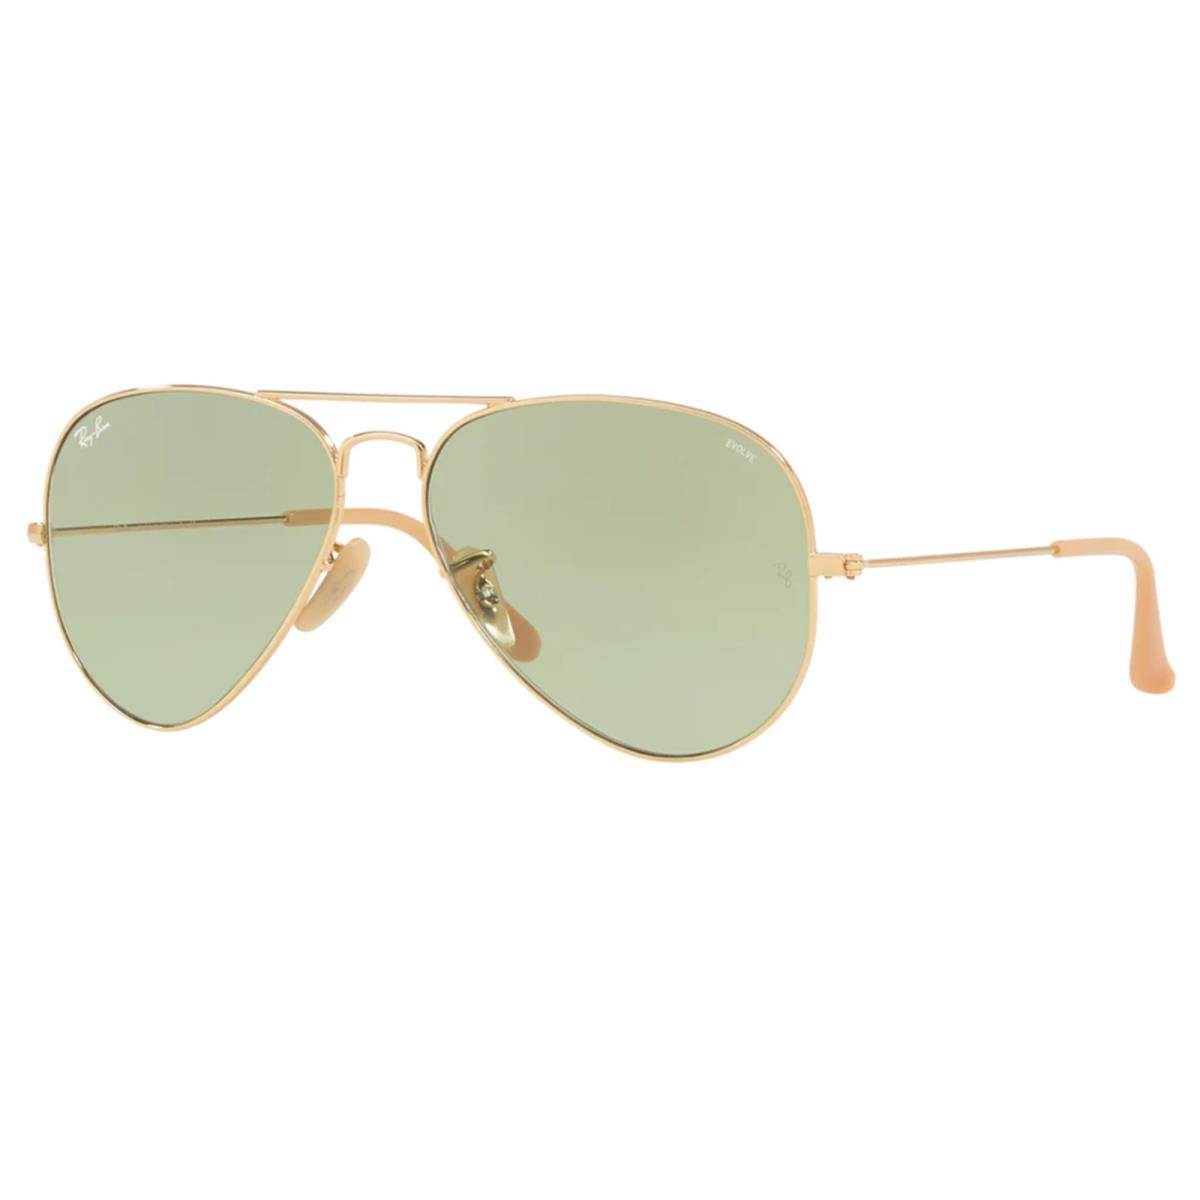 Ray-Ban sunglasses  - Gold Frame, Green Photochromic Lens